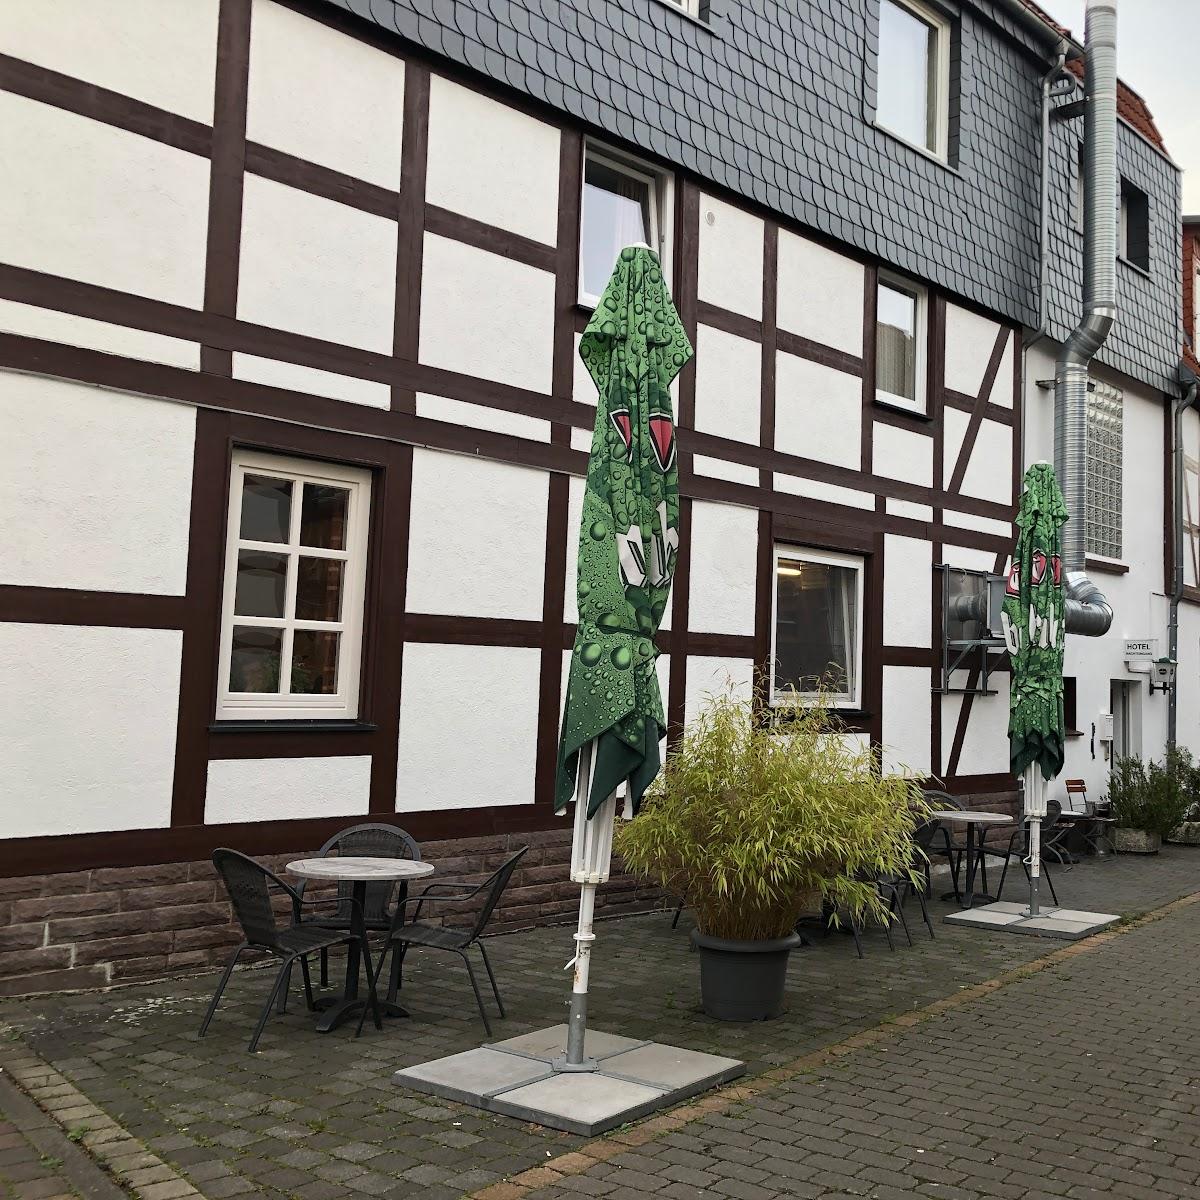 Restaurant "Hotel & Restaurant Deutsche Eiche" in Dassel